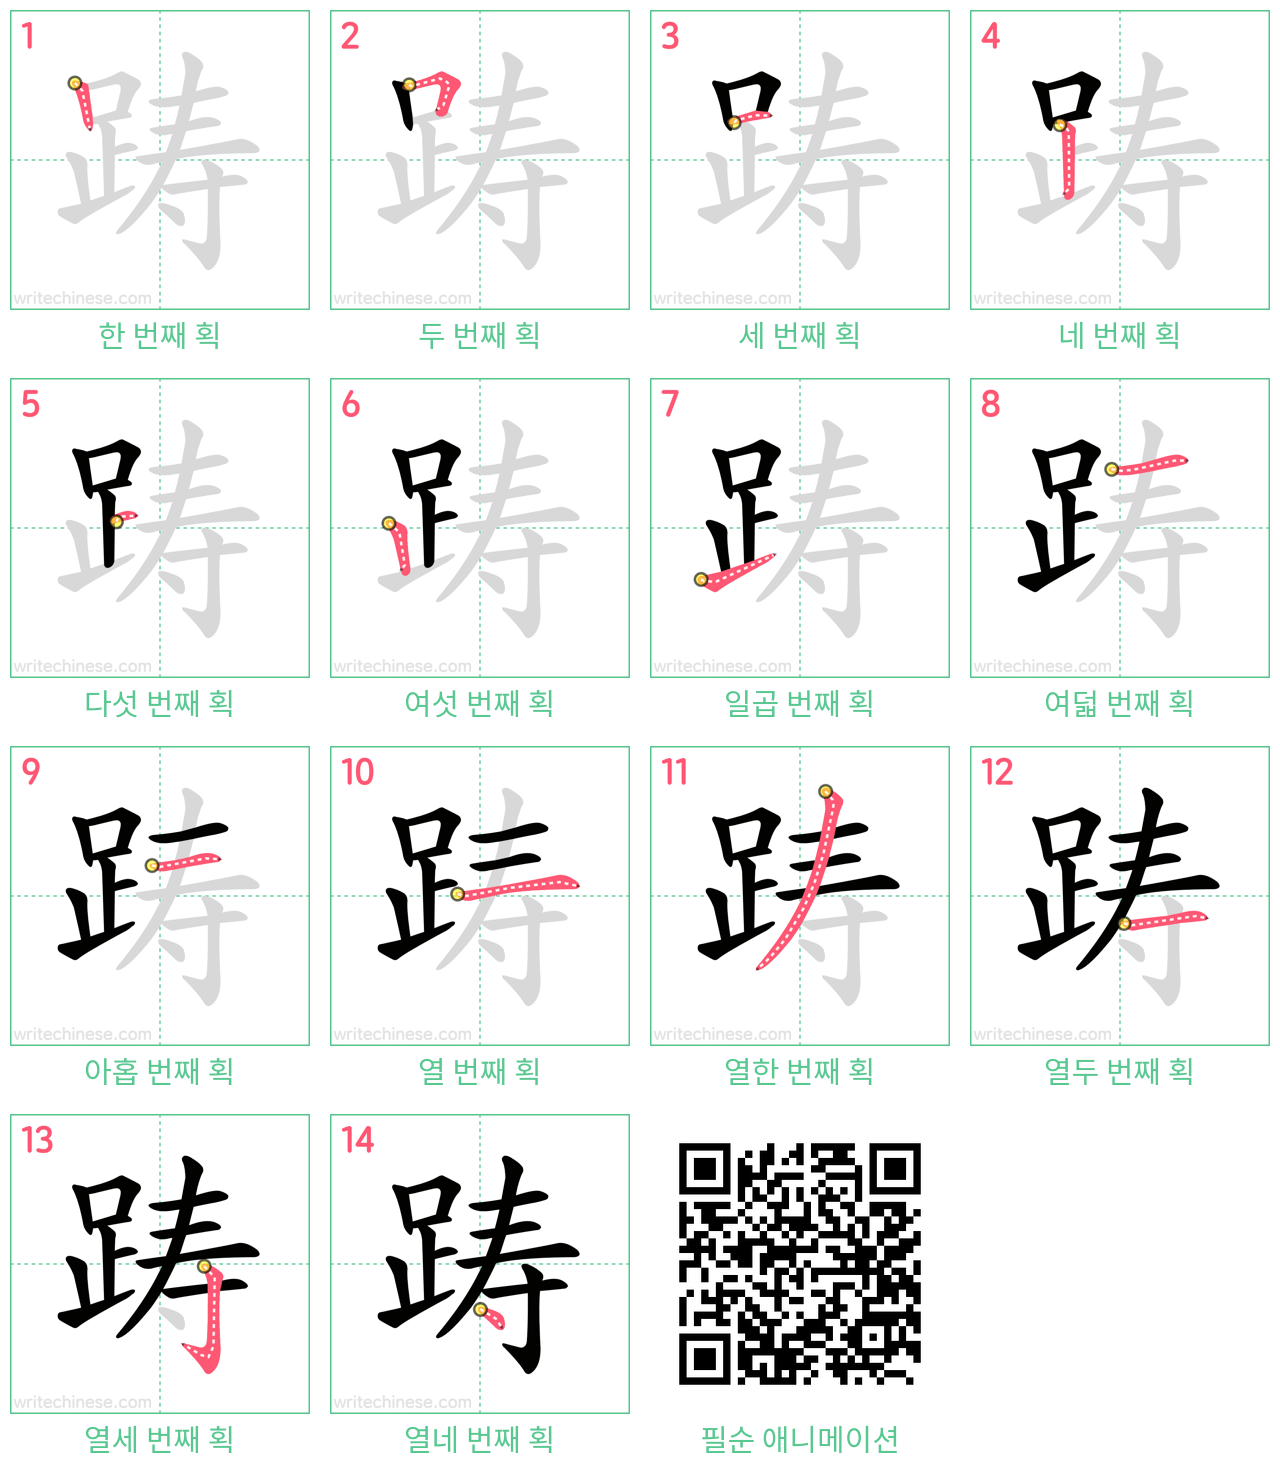 踌 step-by-step stroke order diagrams